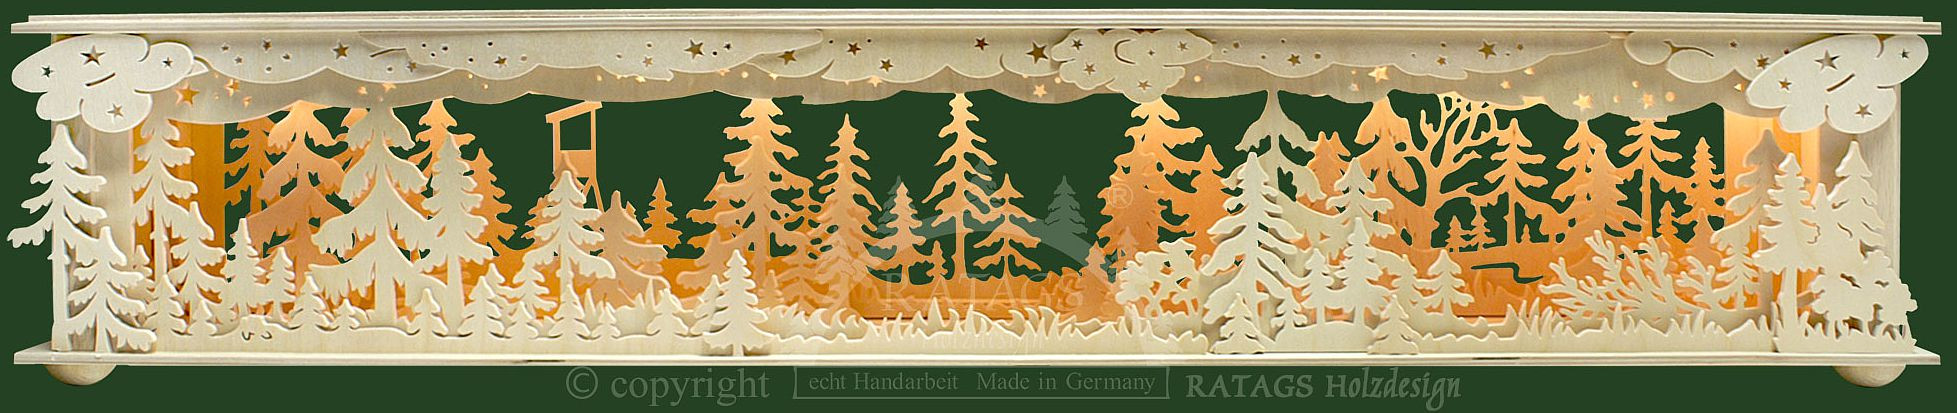 Ratags Holzdesign Raumleuchte Wald mit Hochsitz, groß